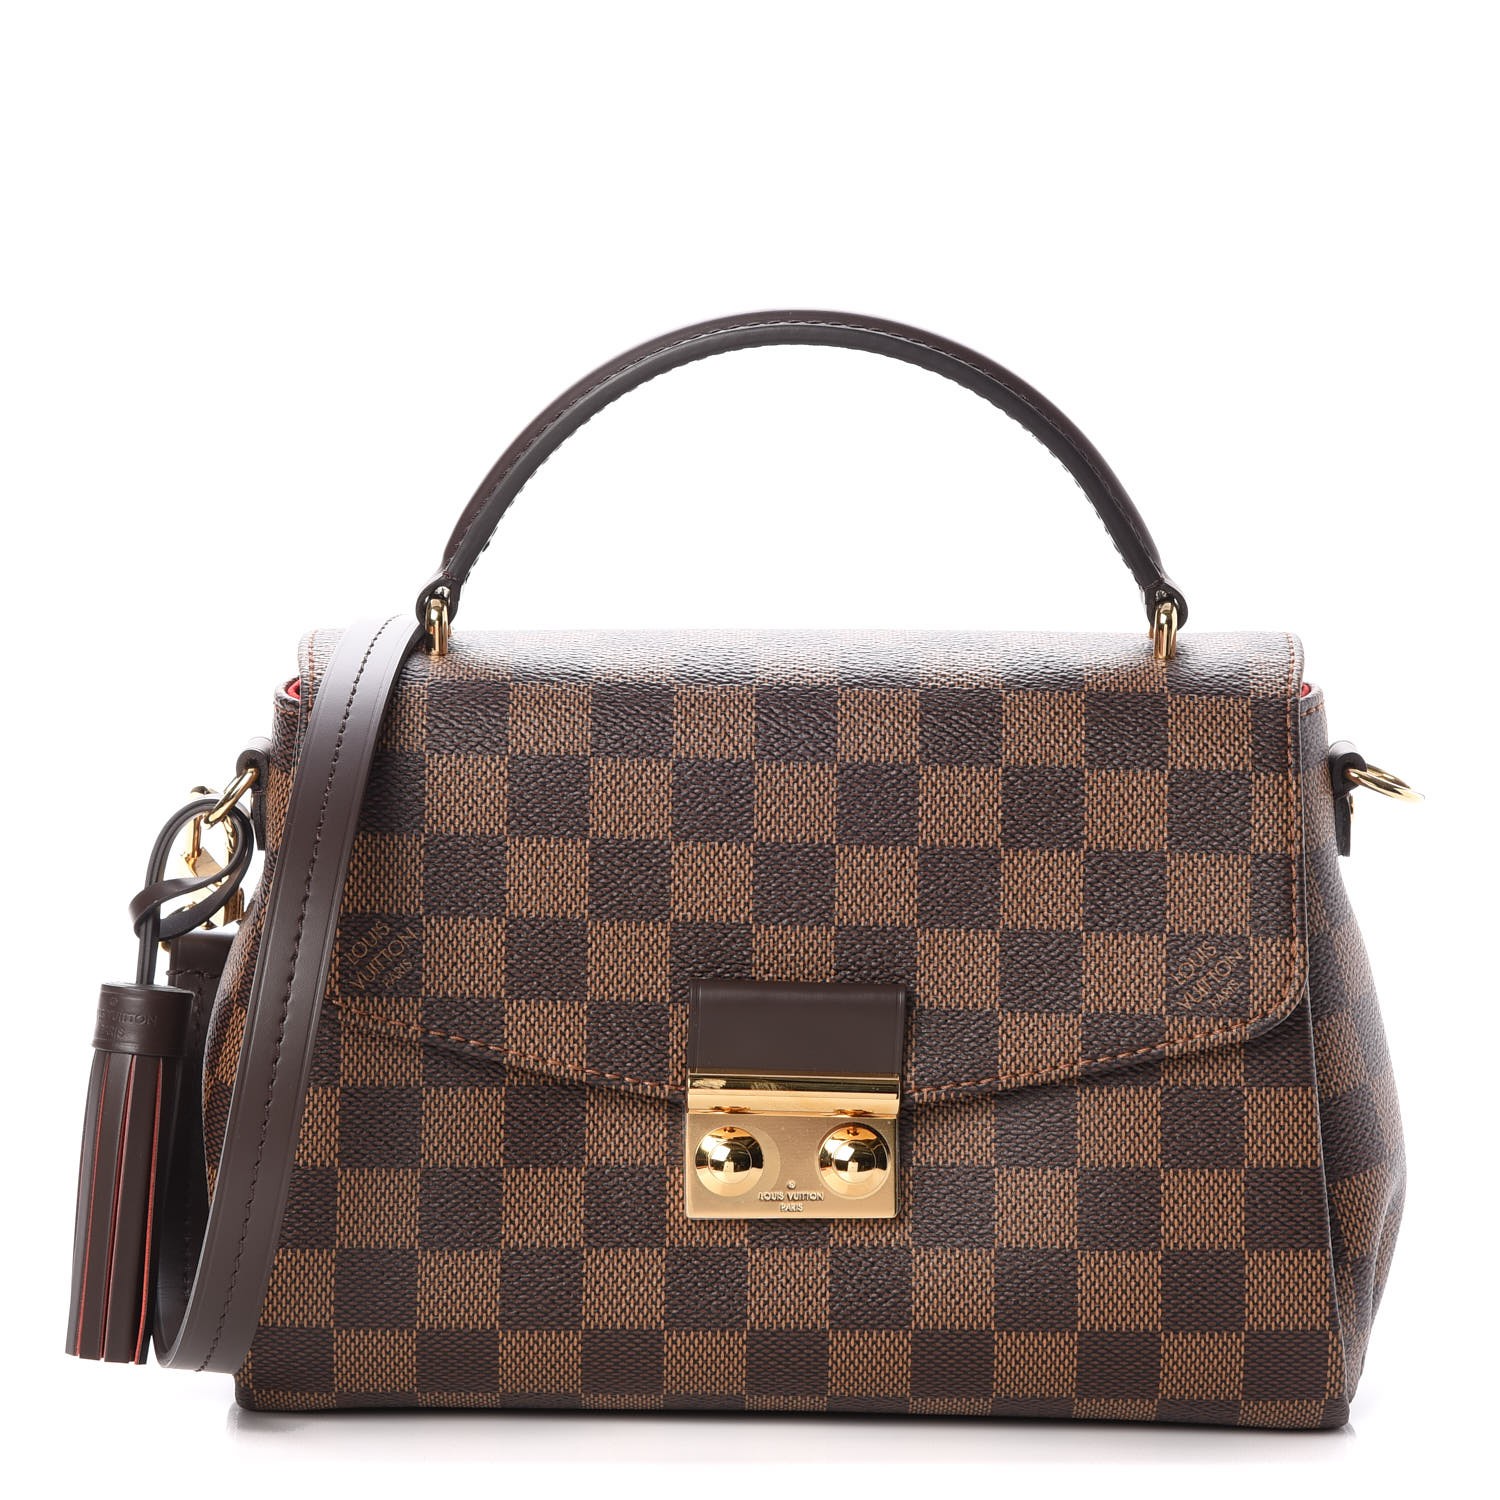 Louis Vuitton Croisette Damier Ebene Handbag Unboxing and Review